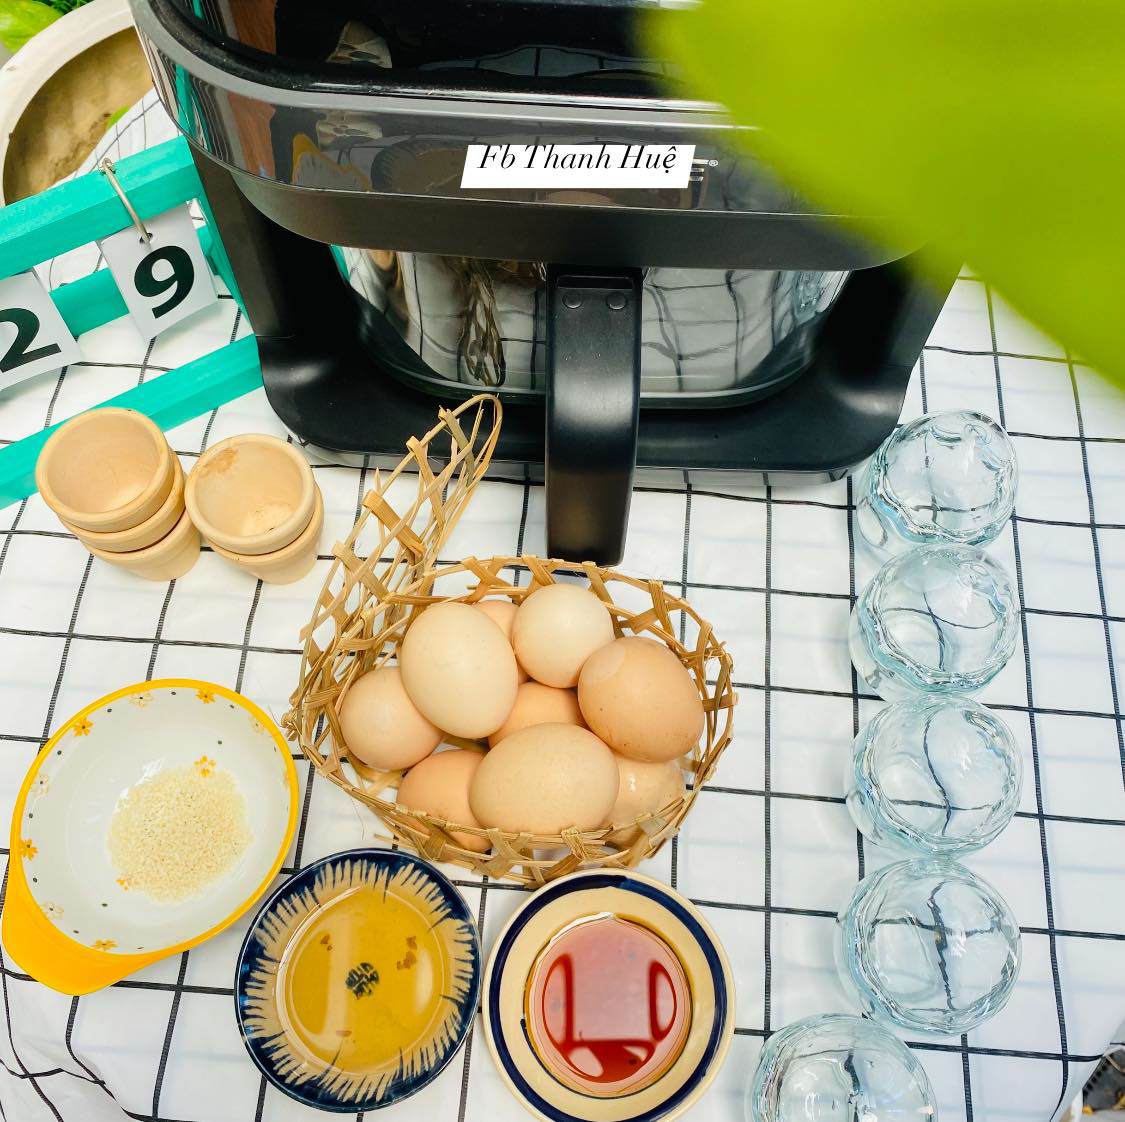 Trứng luộc hay rán mãi cũng chán, đem nướng theo cách này cả nhà thích mê - 2